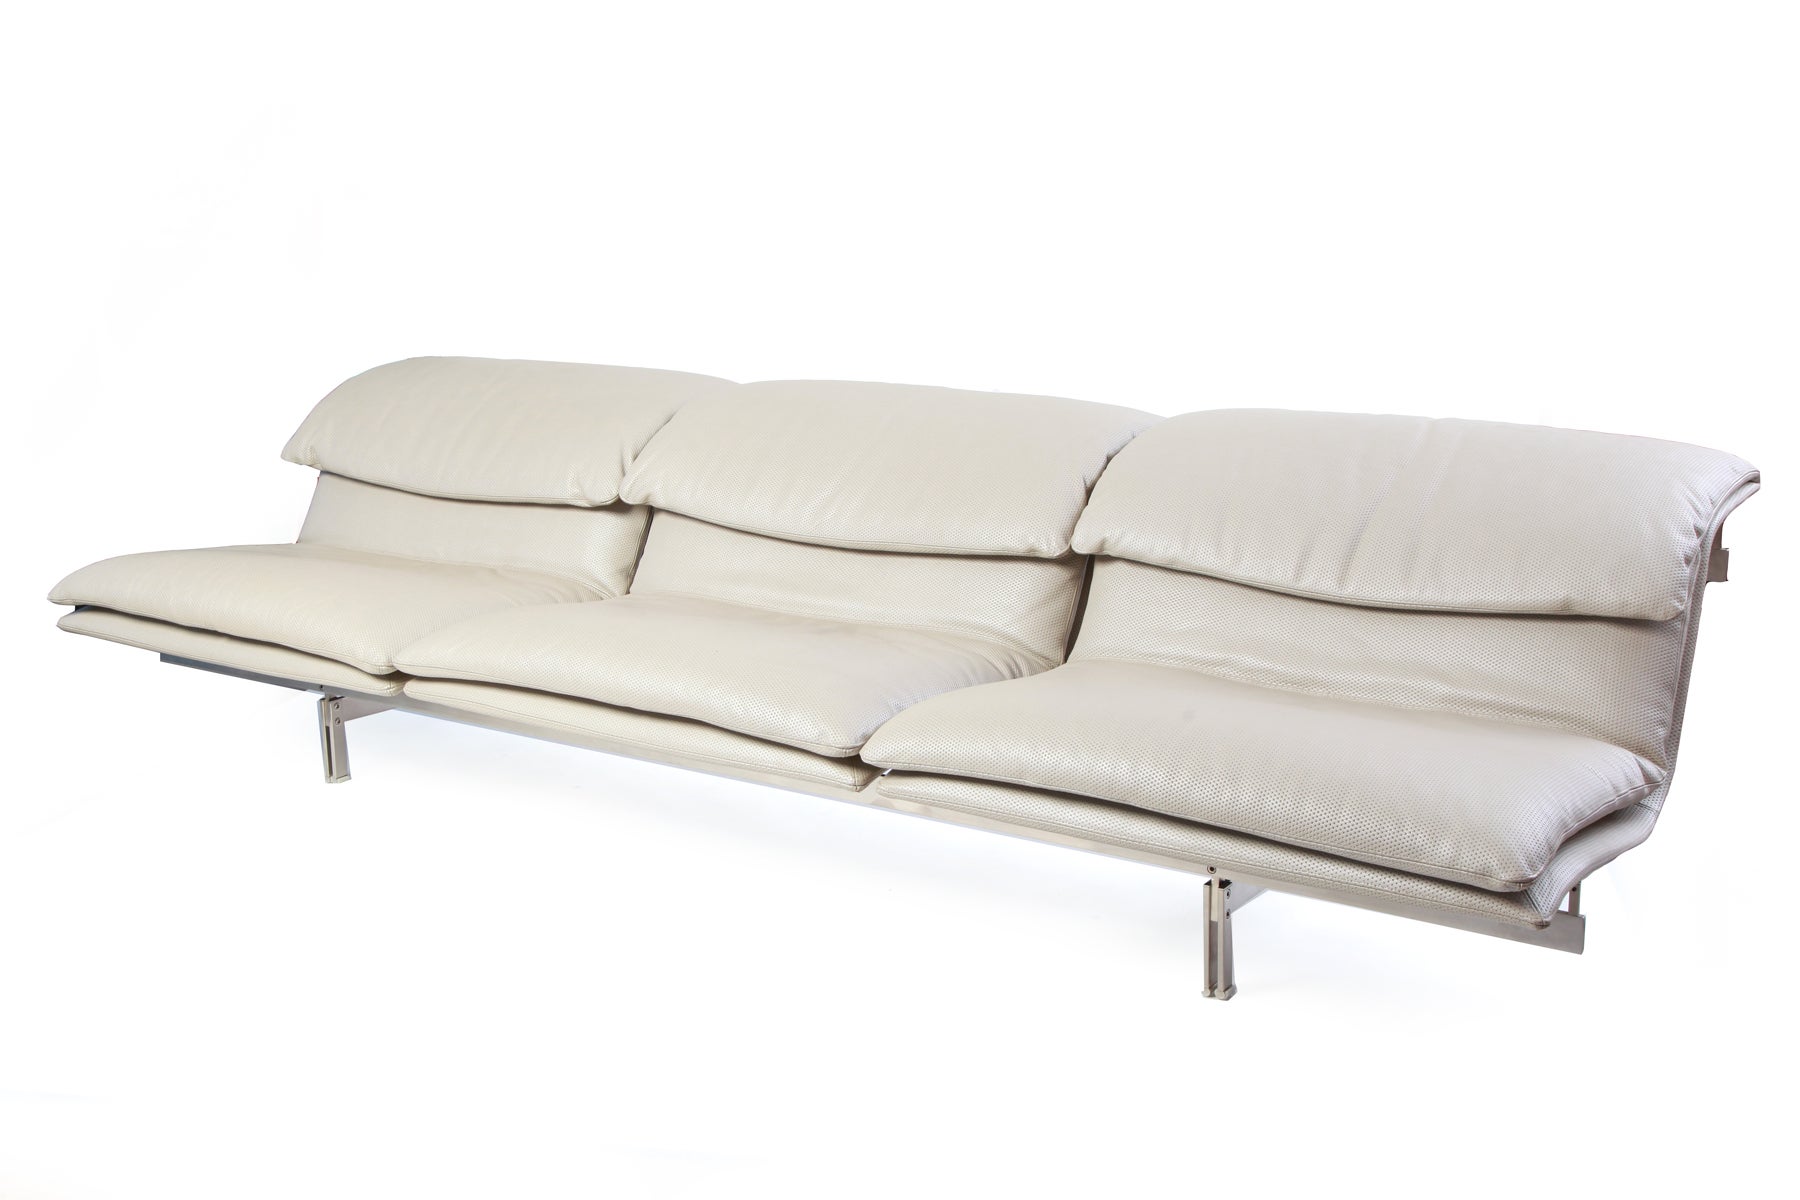 Phenomenal Saporiti Stainless Steel & Mercedes Leather Sofa